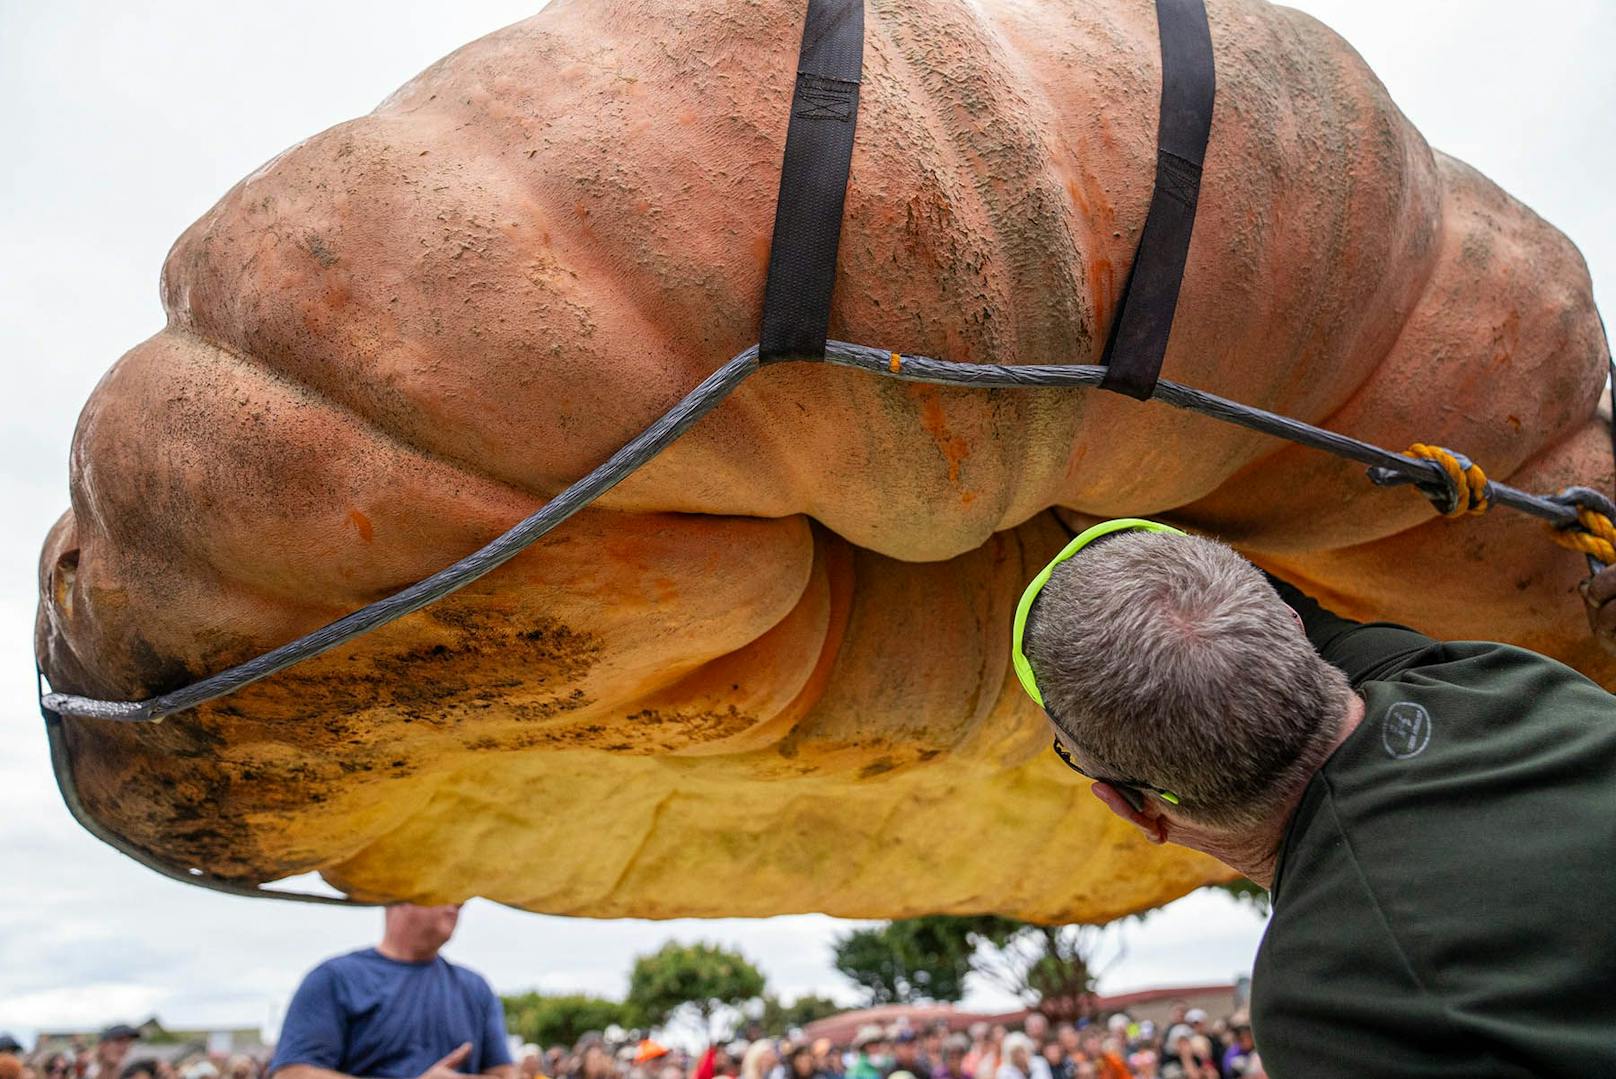 Ein gigantischer Kürbis mit einem Gewicht von mehr als einer Tonne hat in Kalifornien den Rekord für den größten Kürbis der Welt gebrochen ...